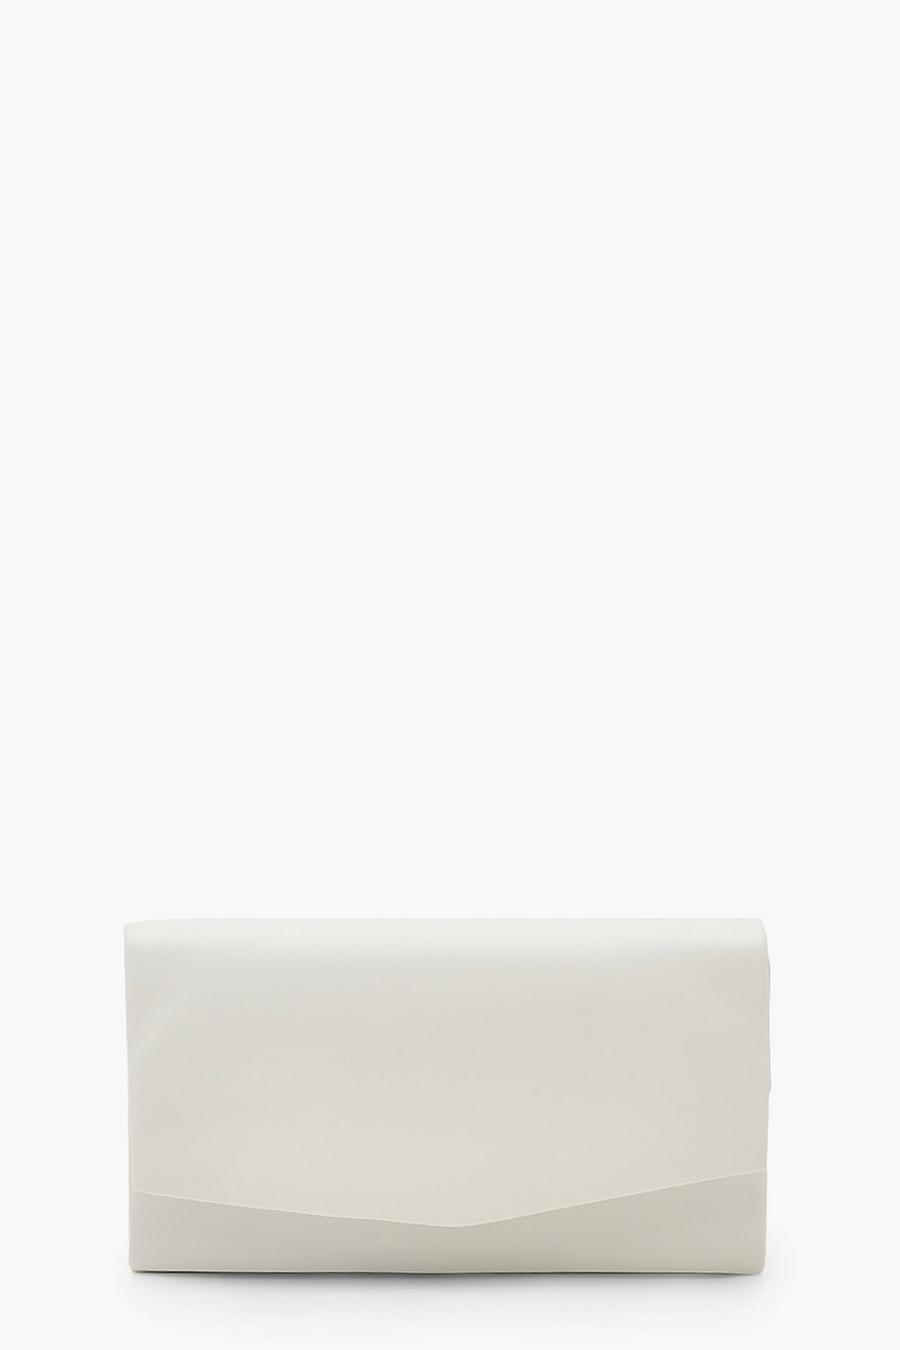 Bolso de cuero sintético suave texturizado de mano con cadena, Blanco white